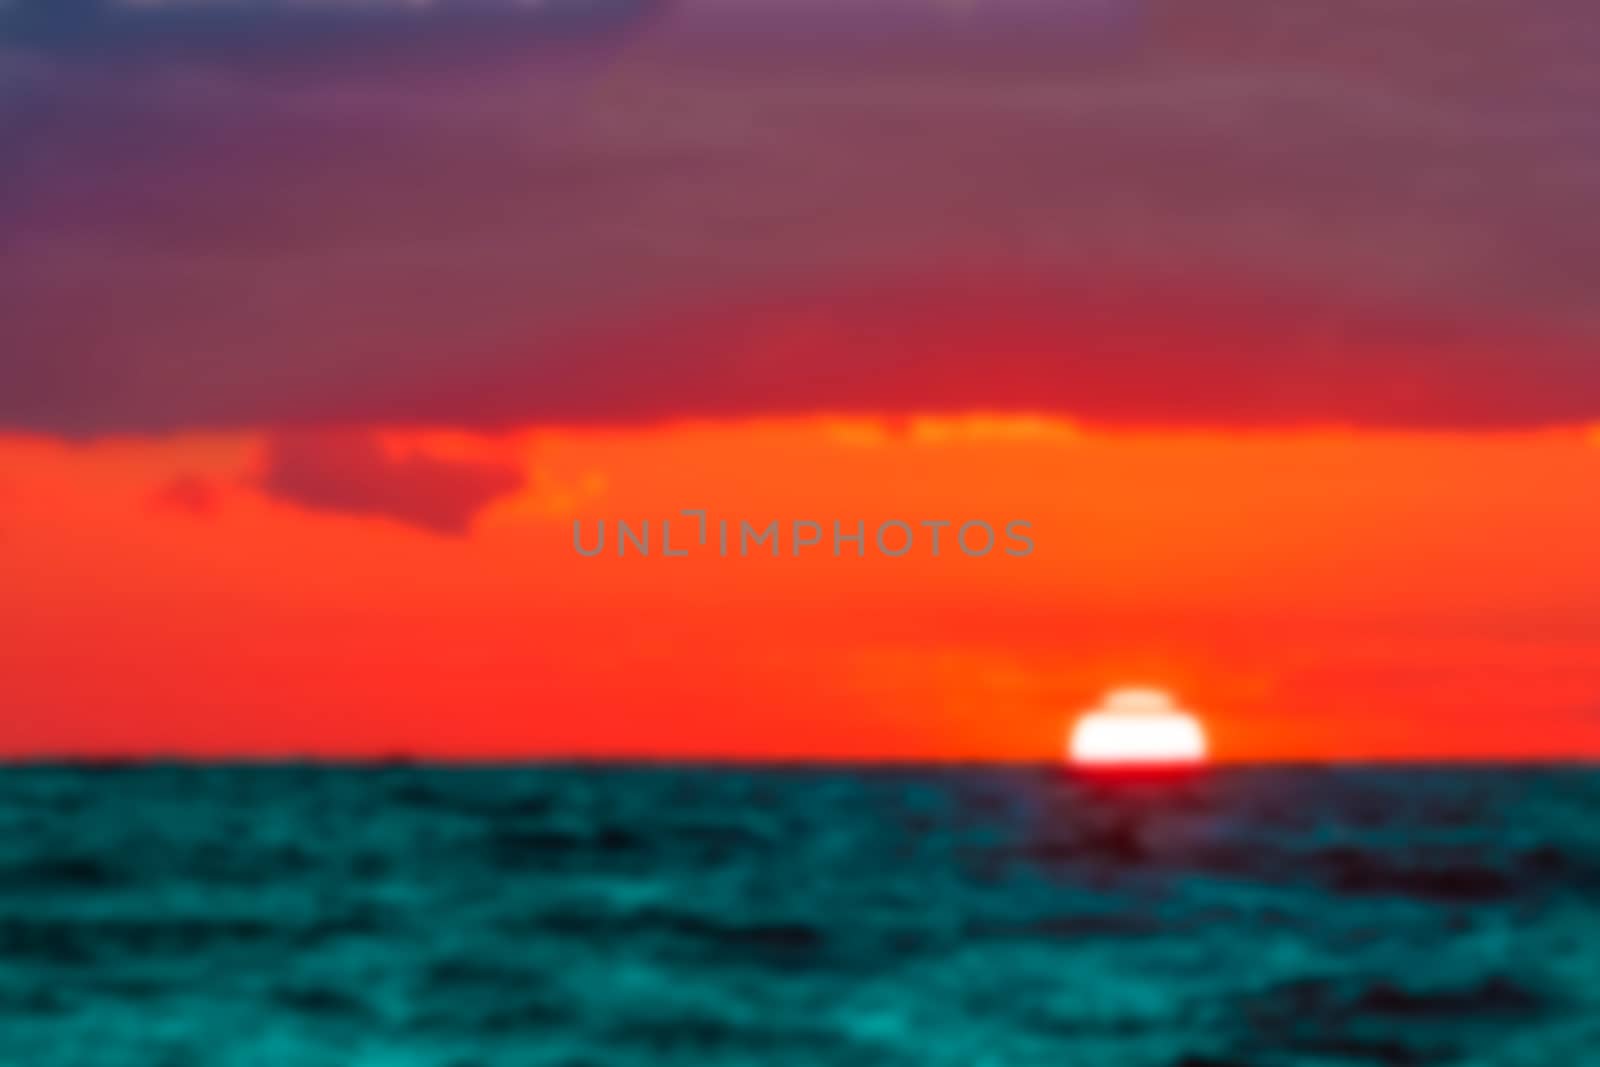 Hot sunset - blurred image by sengnsp